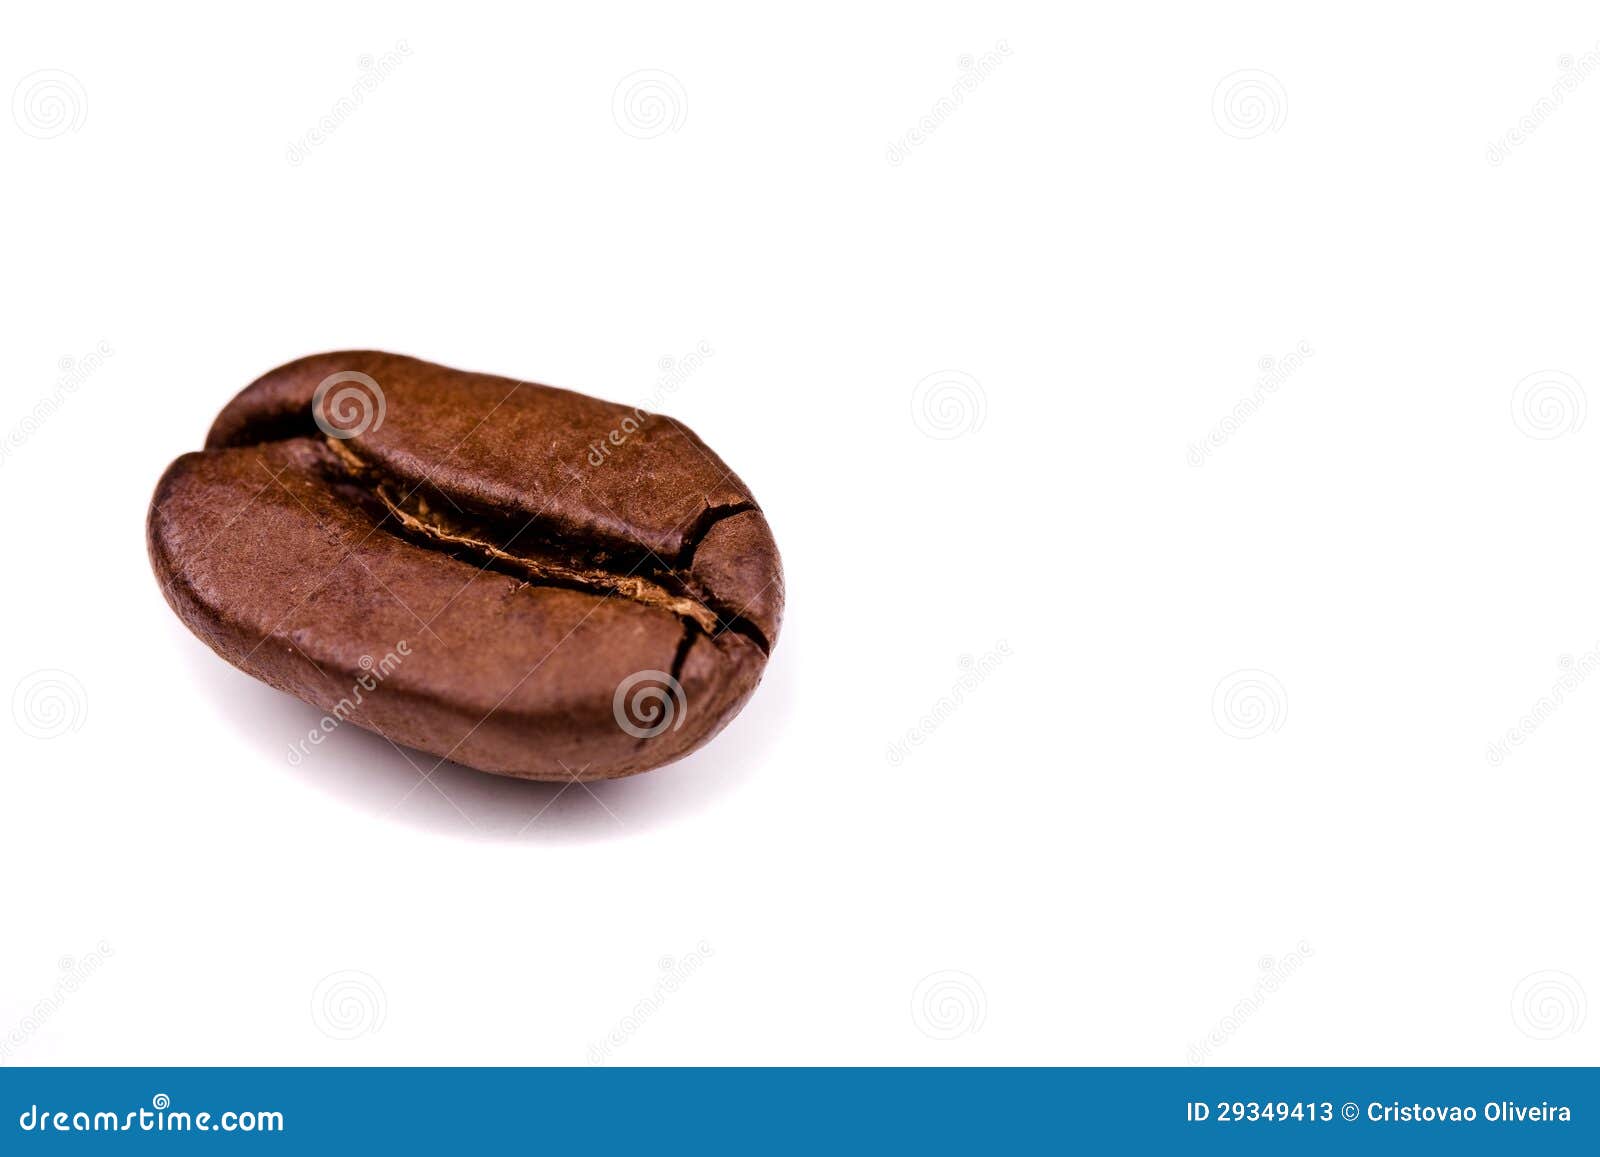 coffe bean